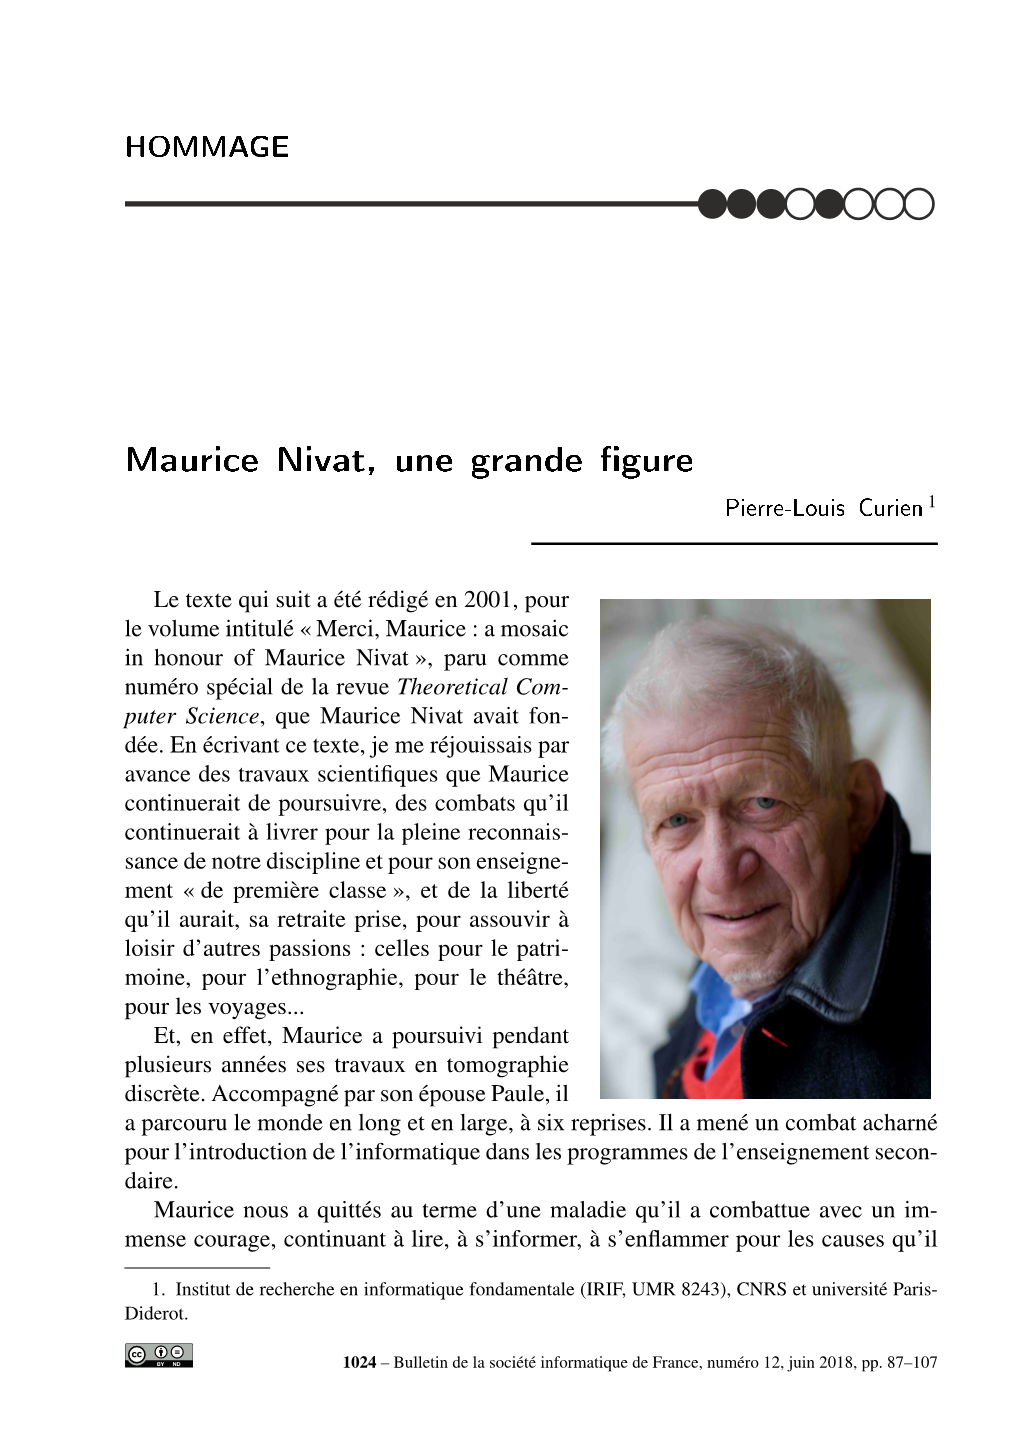 MAURICE NIVAT, UNE GRANDE FIGURE 89 ◦◦◦◦••◦◦ Une Brève Biographie Scientiﬁque De Maurice Nivat 2